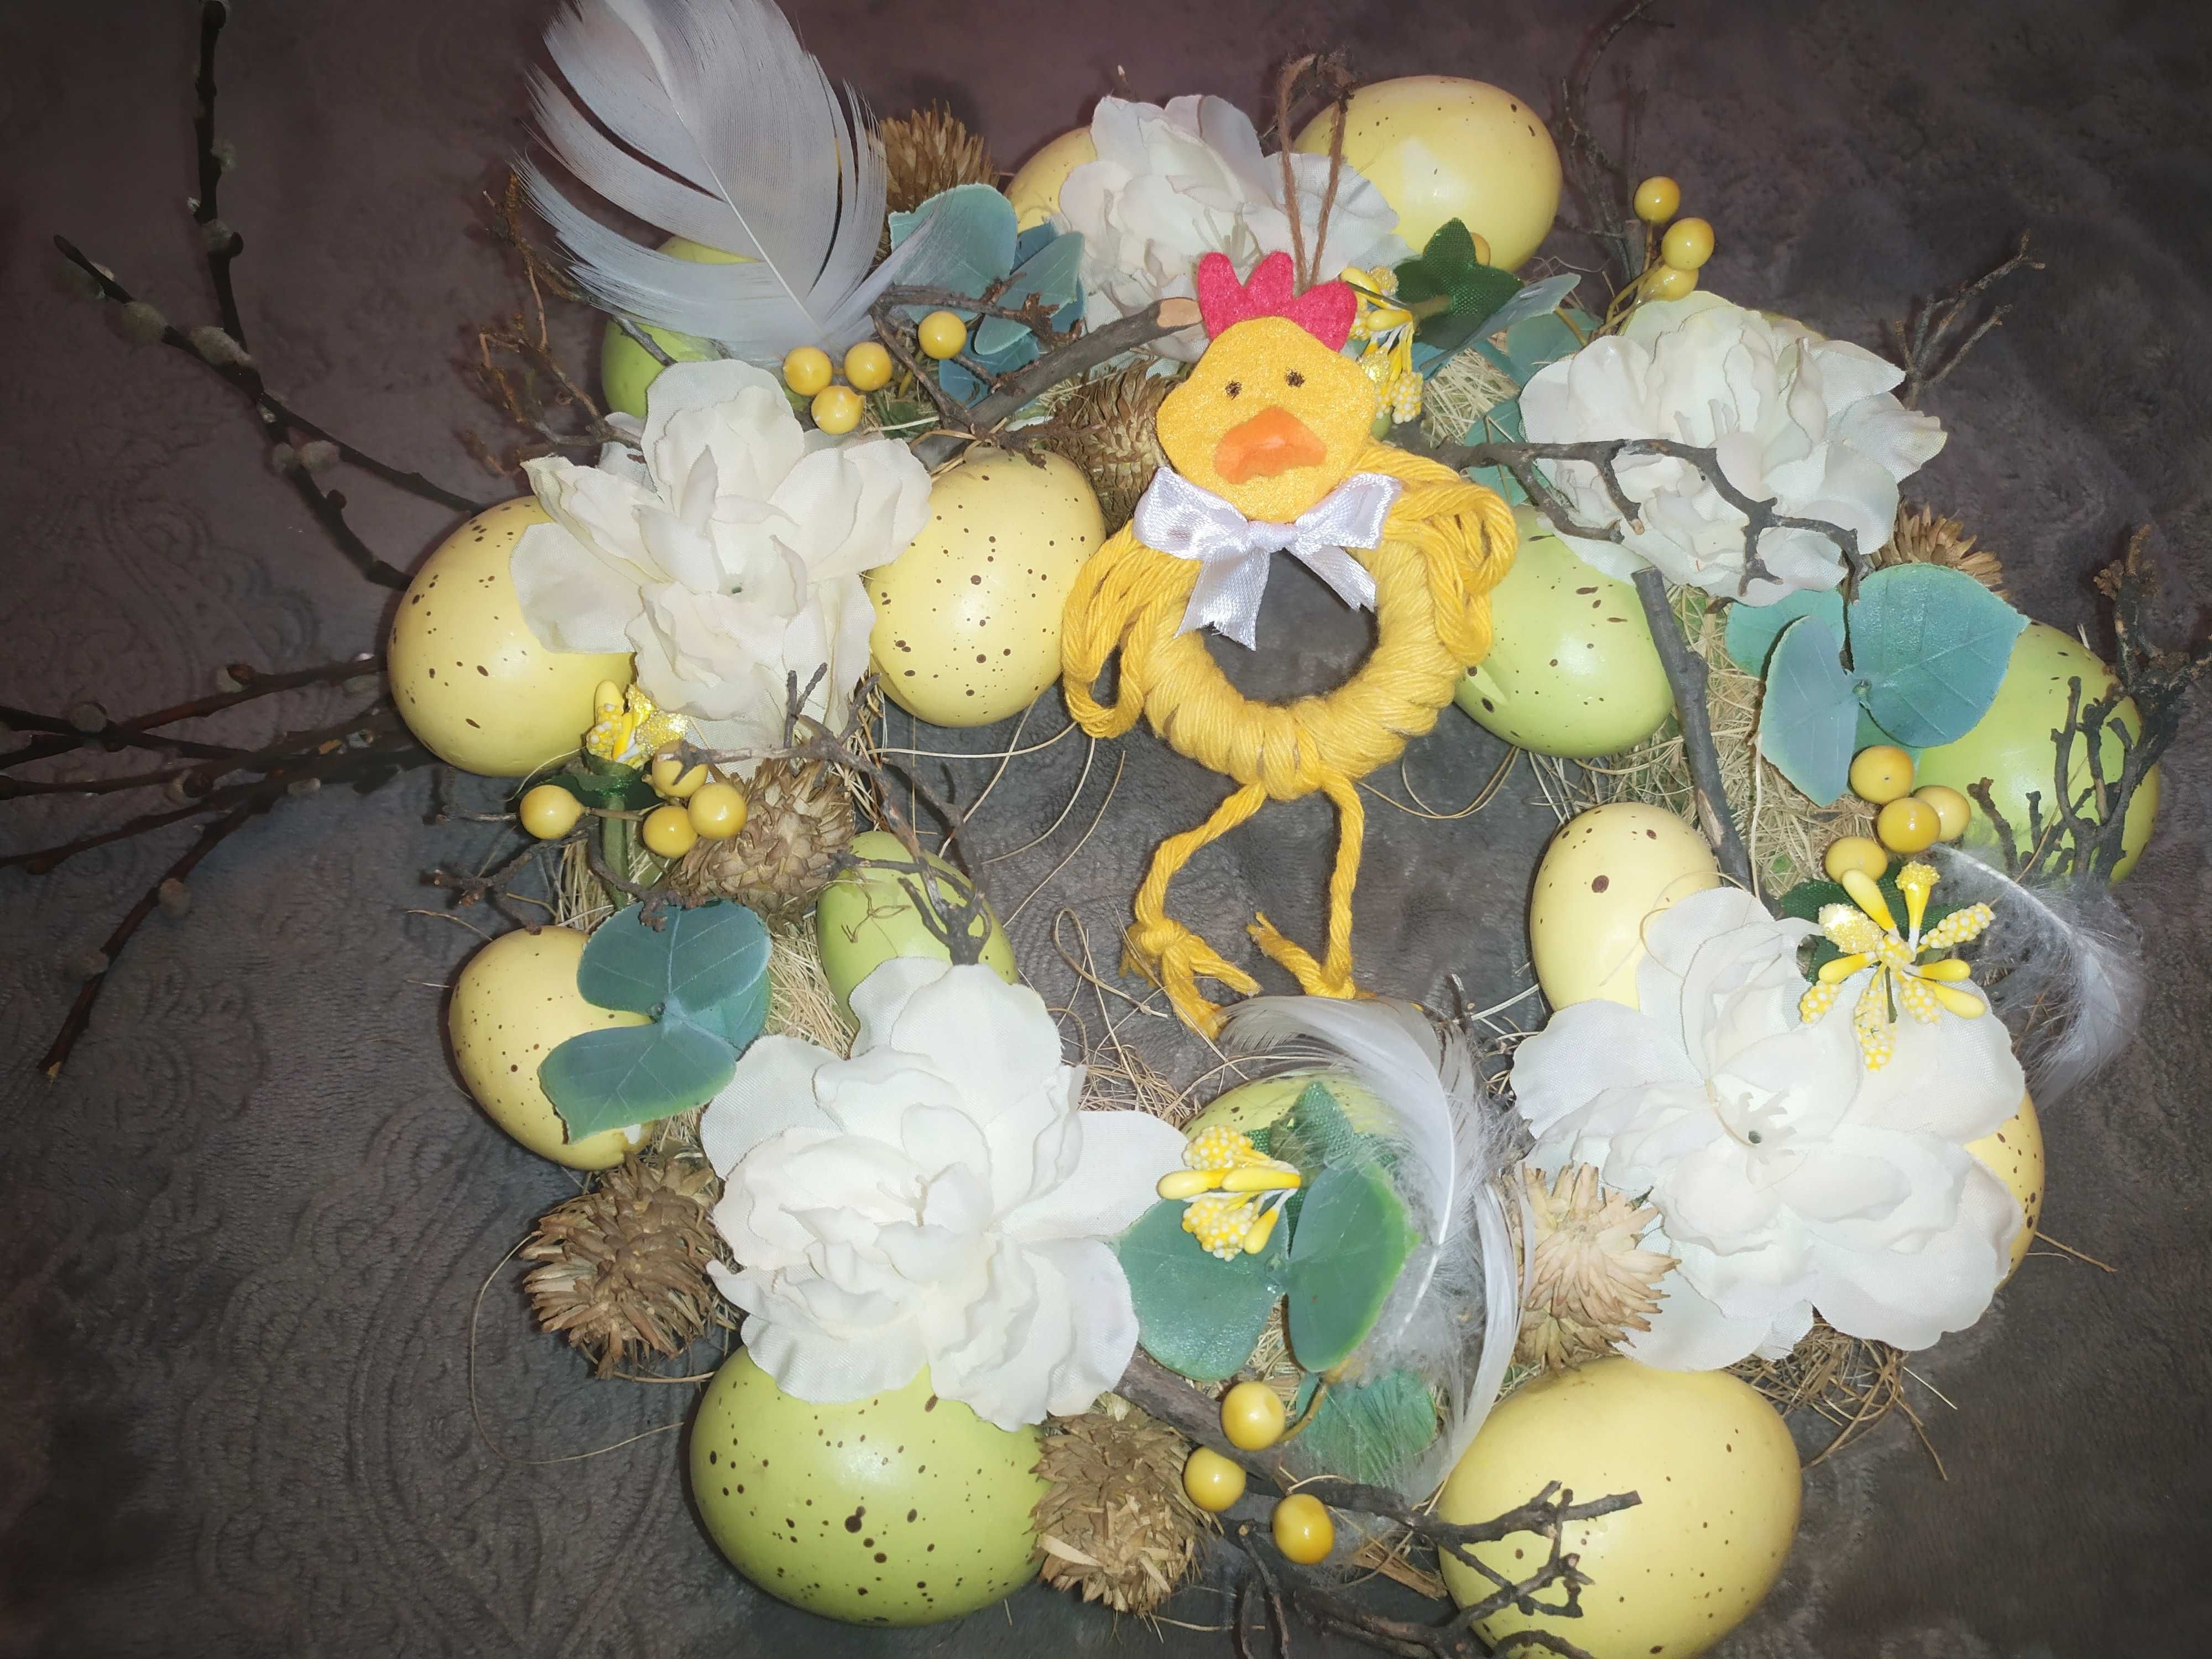 Wielkanocna ozdoba żółty kurczak handmade rękodzieło z filcu i sznurka